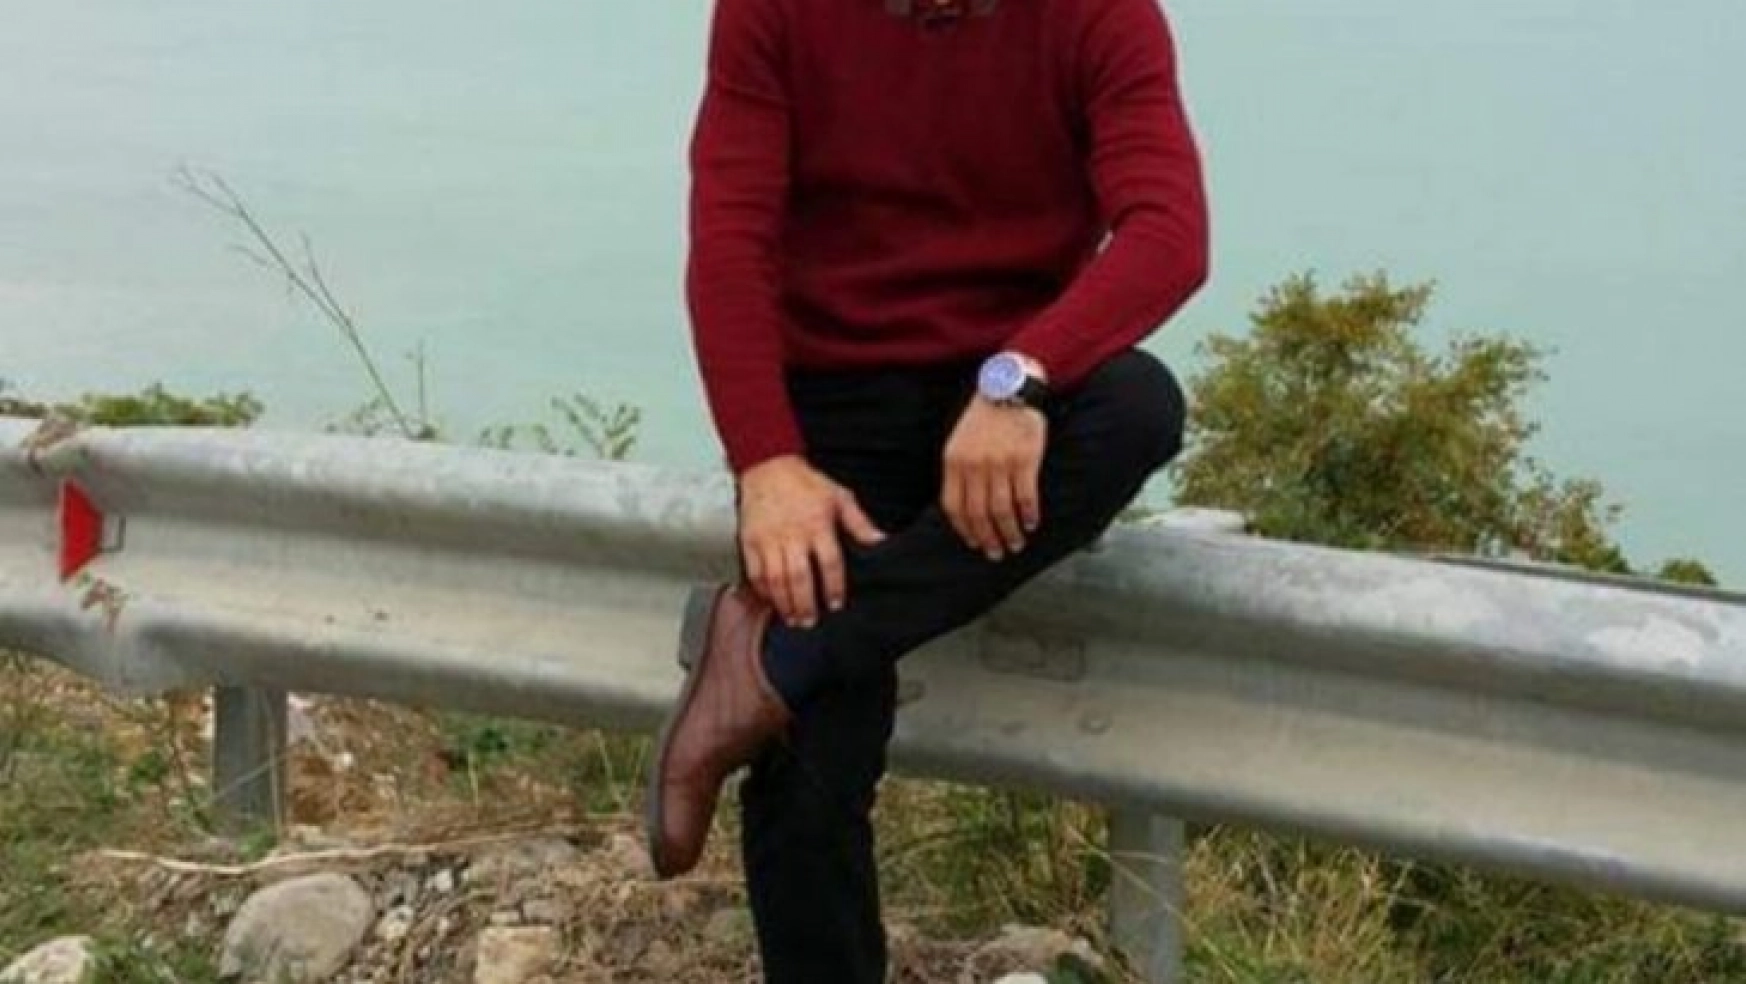 Samsun'da patpat kazası: 1 ölü, 1 yaralı